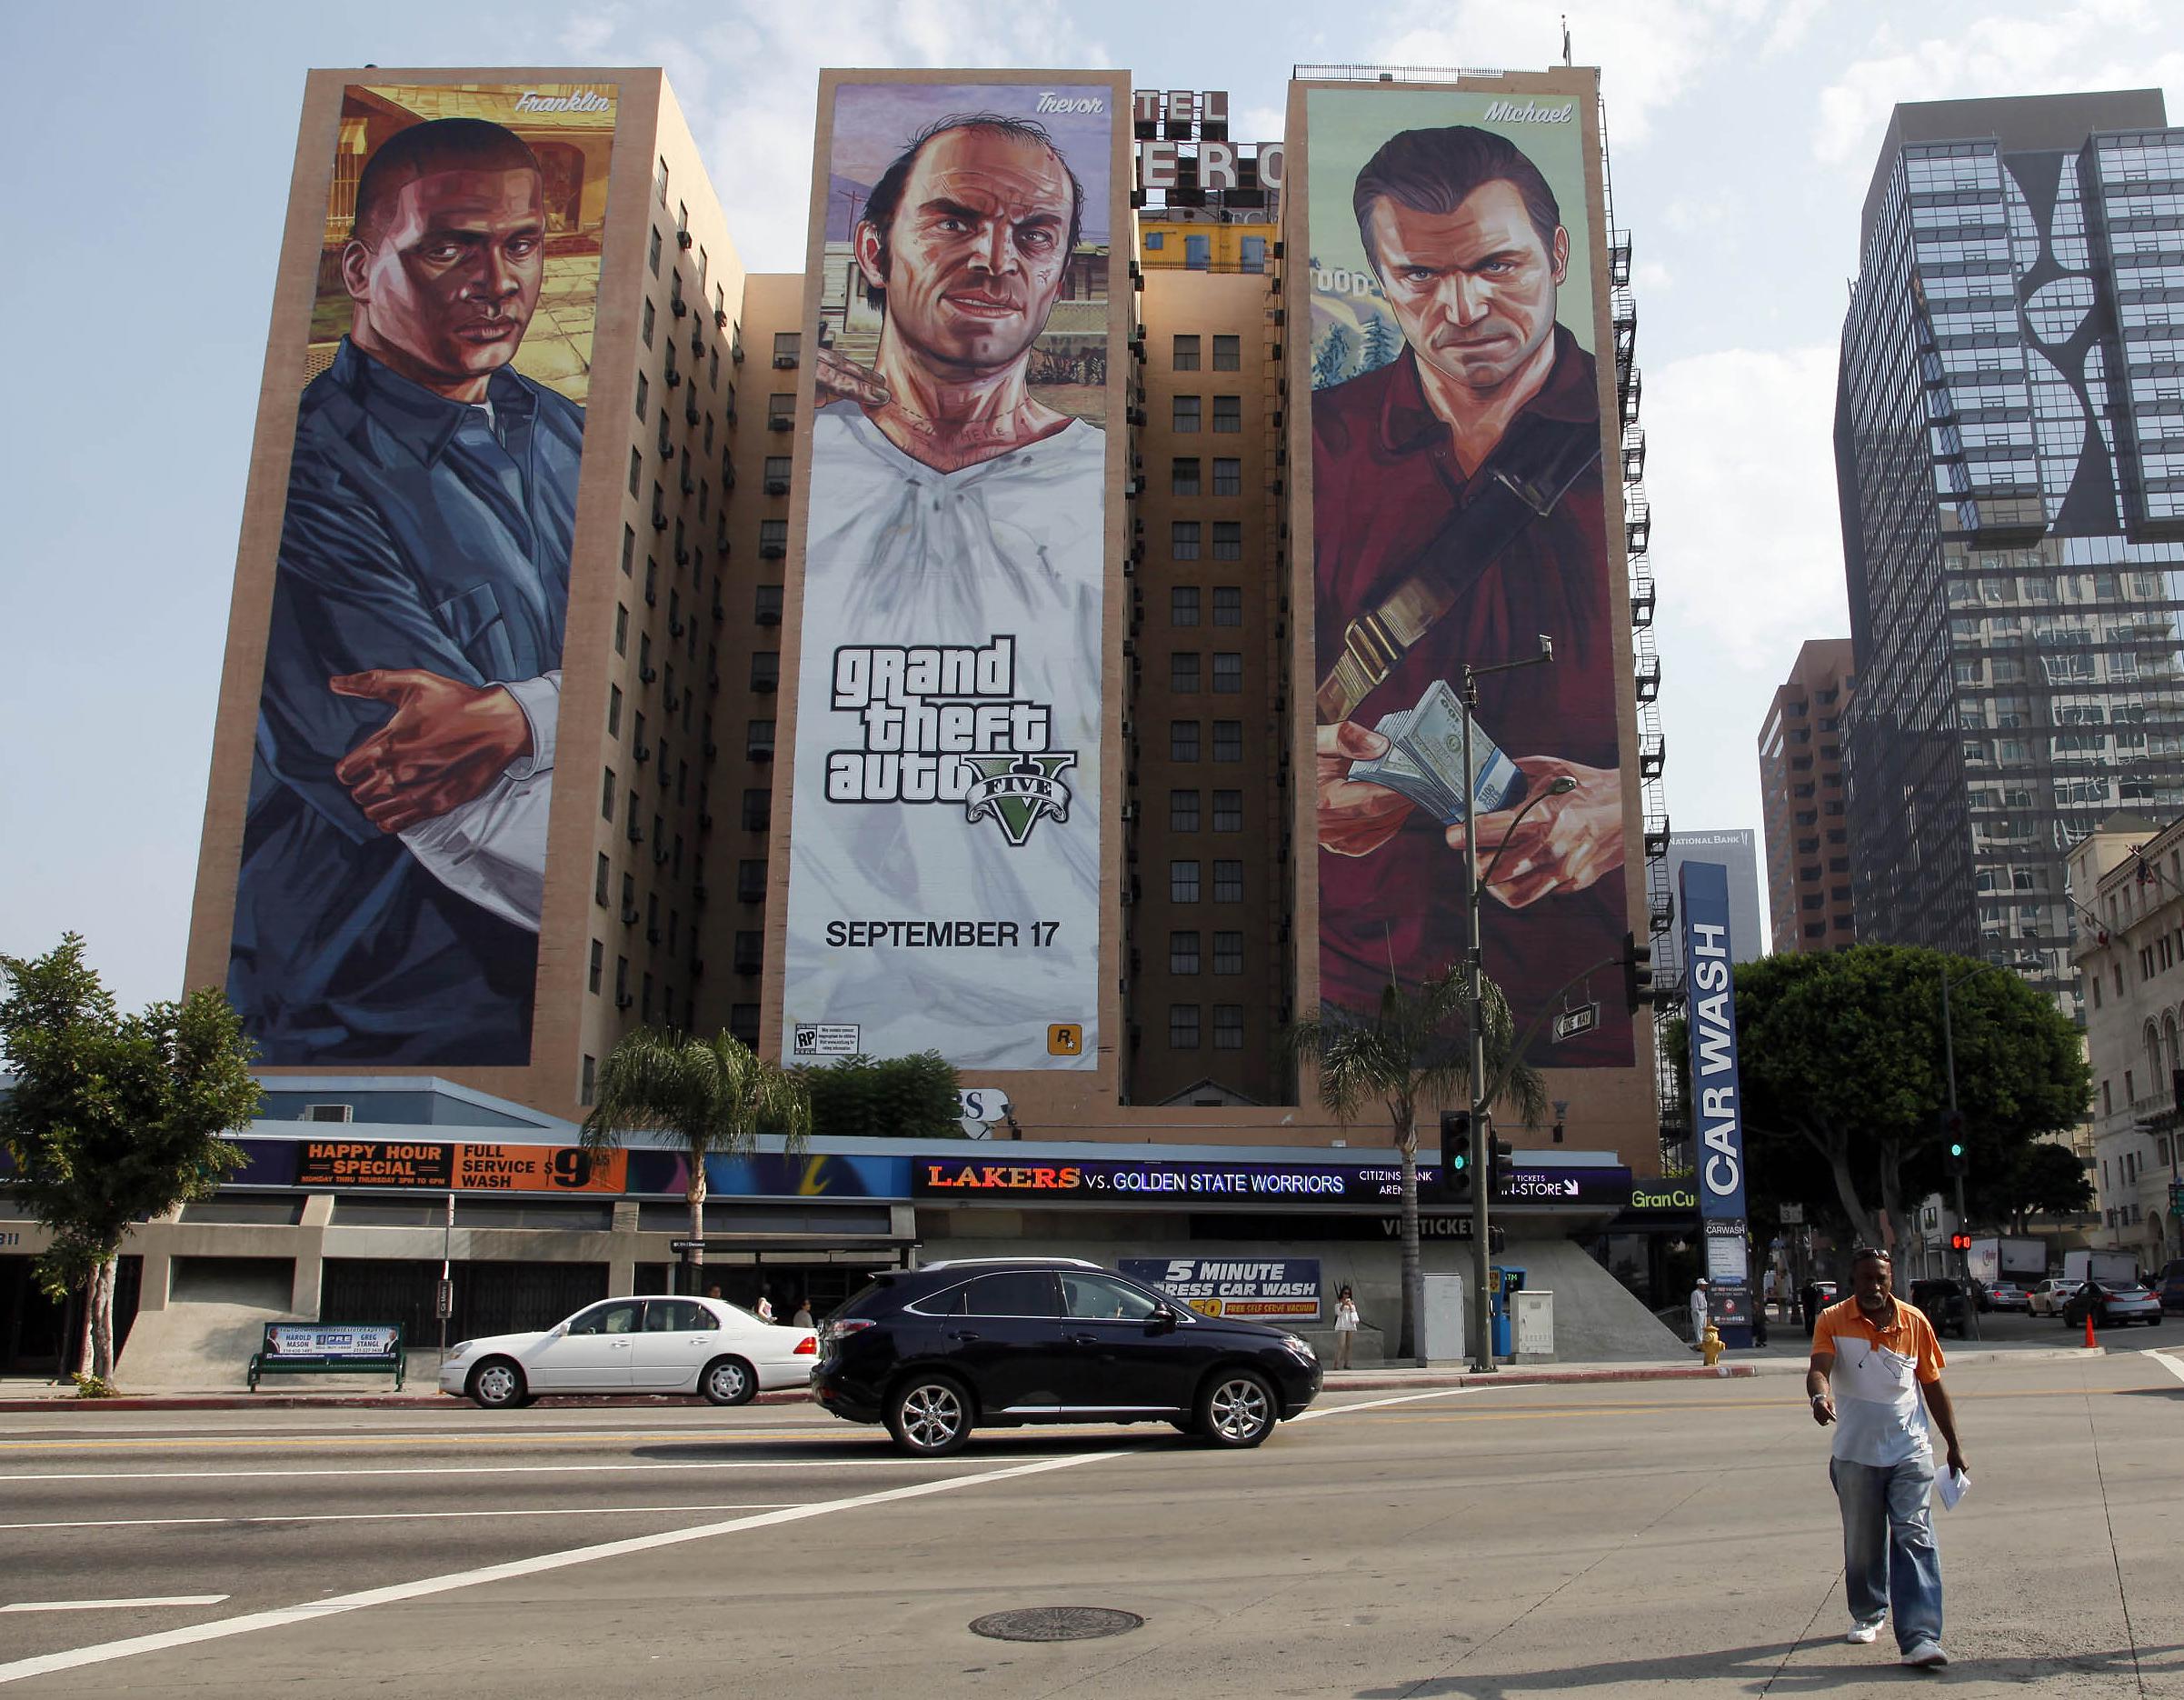 Imágenes robadas de Grand Theft Auto colgadas en Internet en